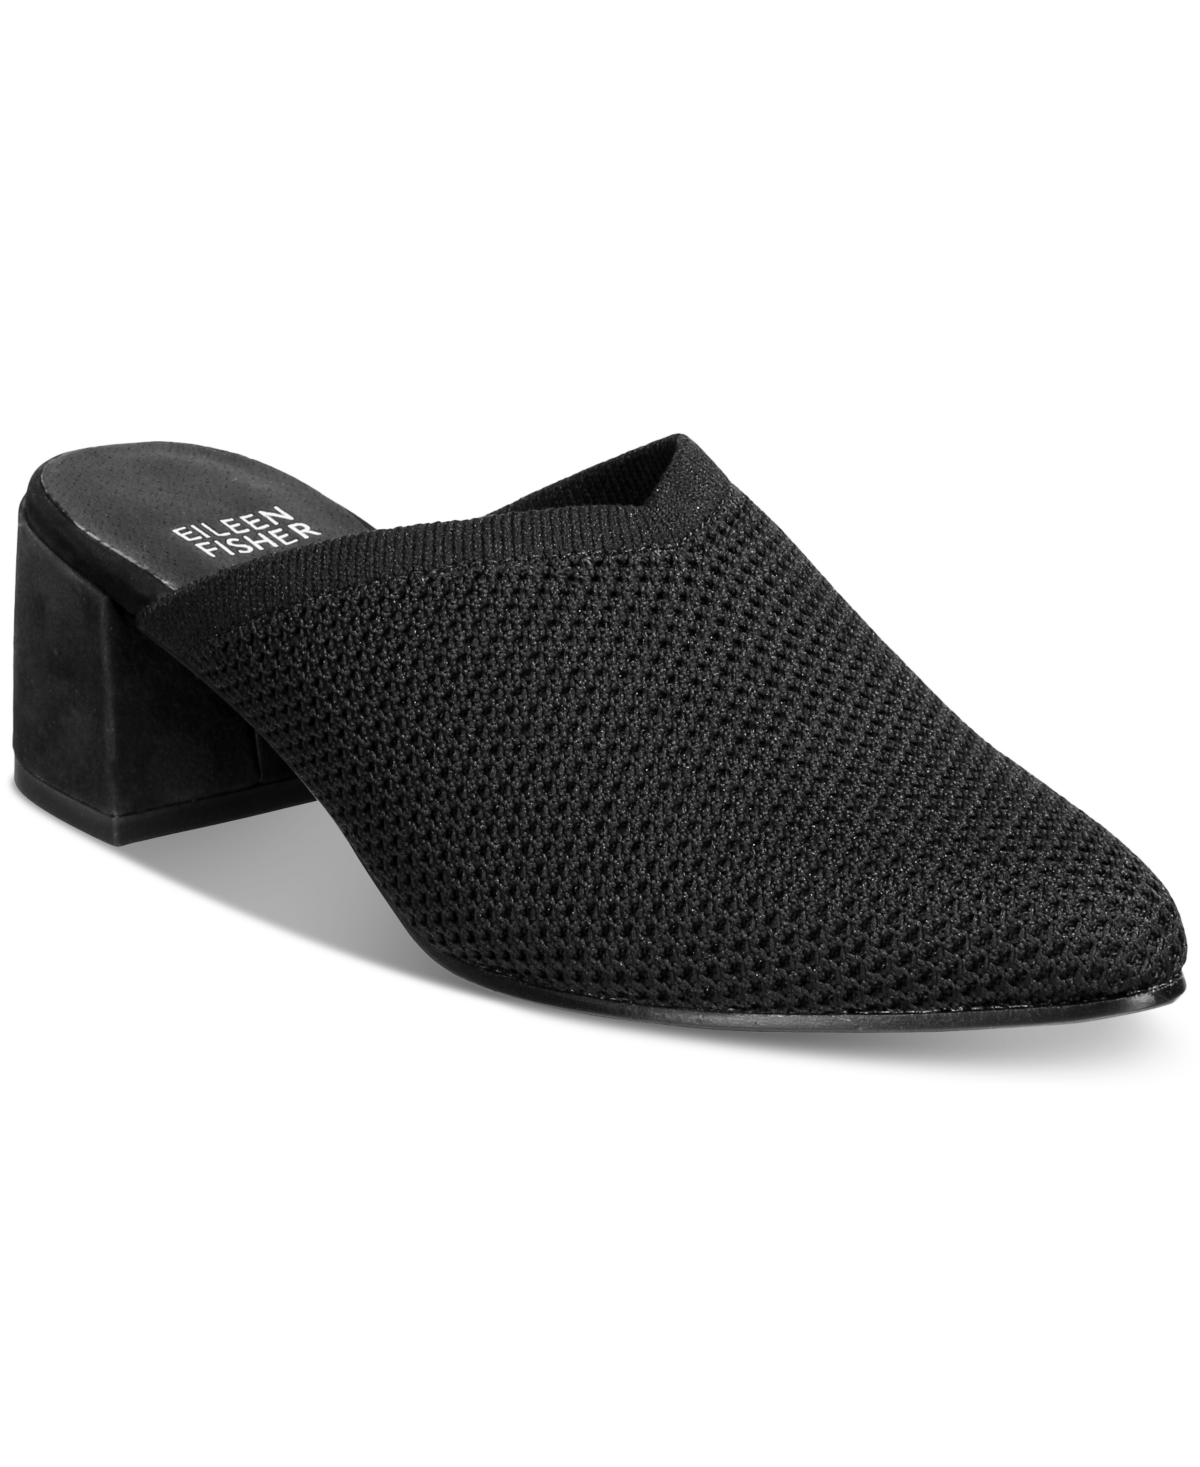 eileen-fisher-women-s-gest-mule-pumps-women-s-shoes-in-black-modesens